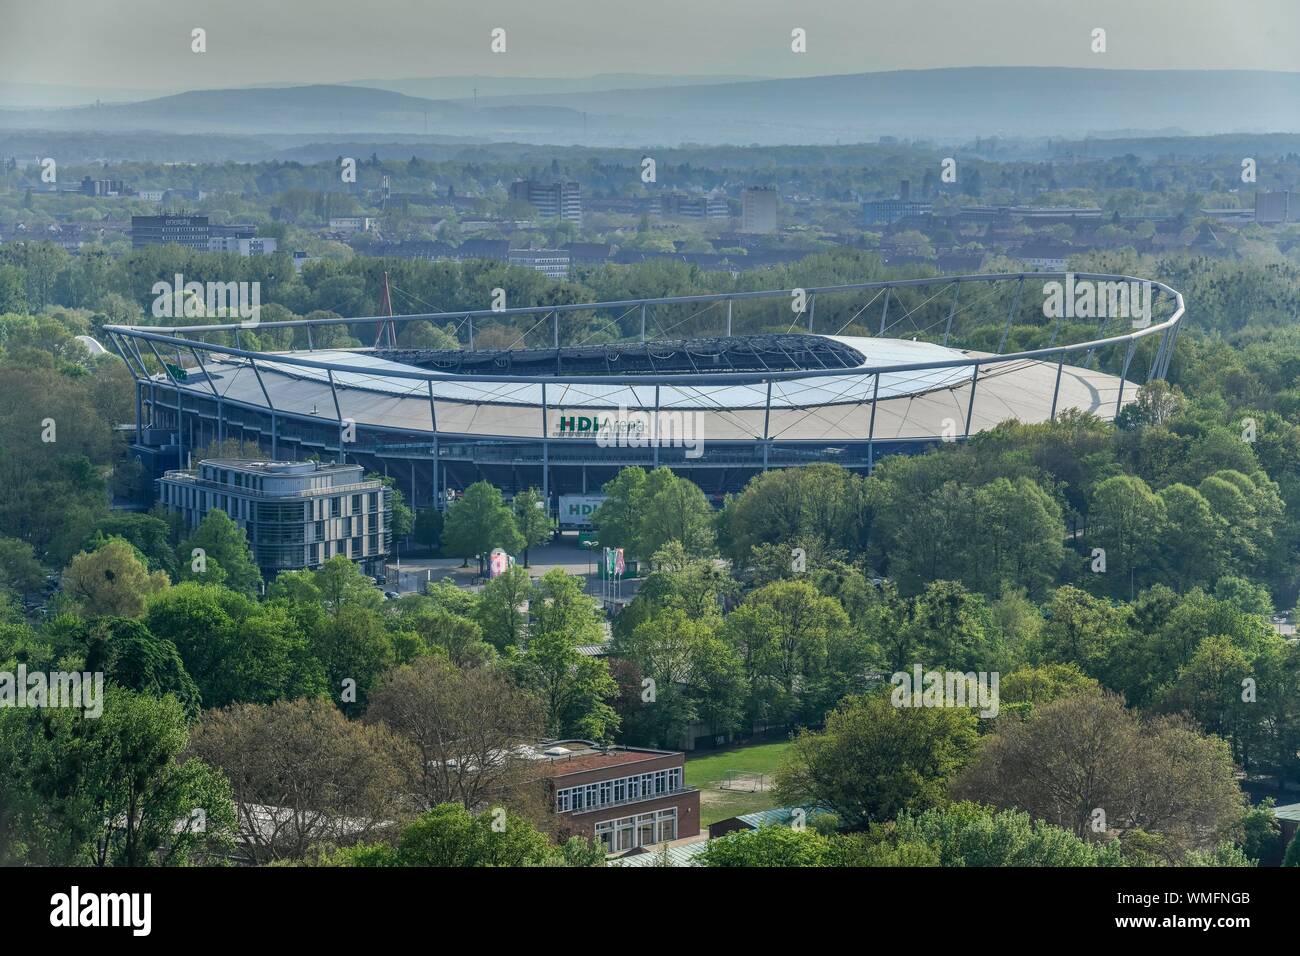 Fussballstadion HDI-Arena, Hannover, Niedersachsen, Deutschland Stock Photo